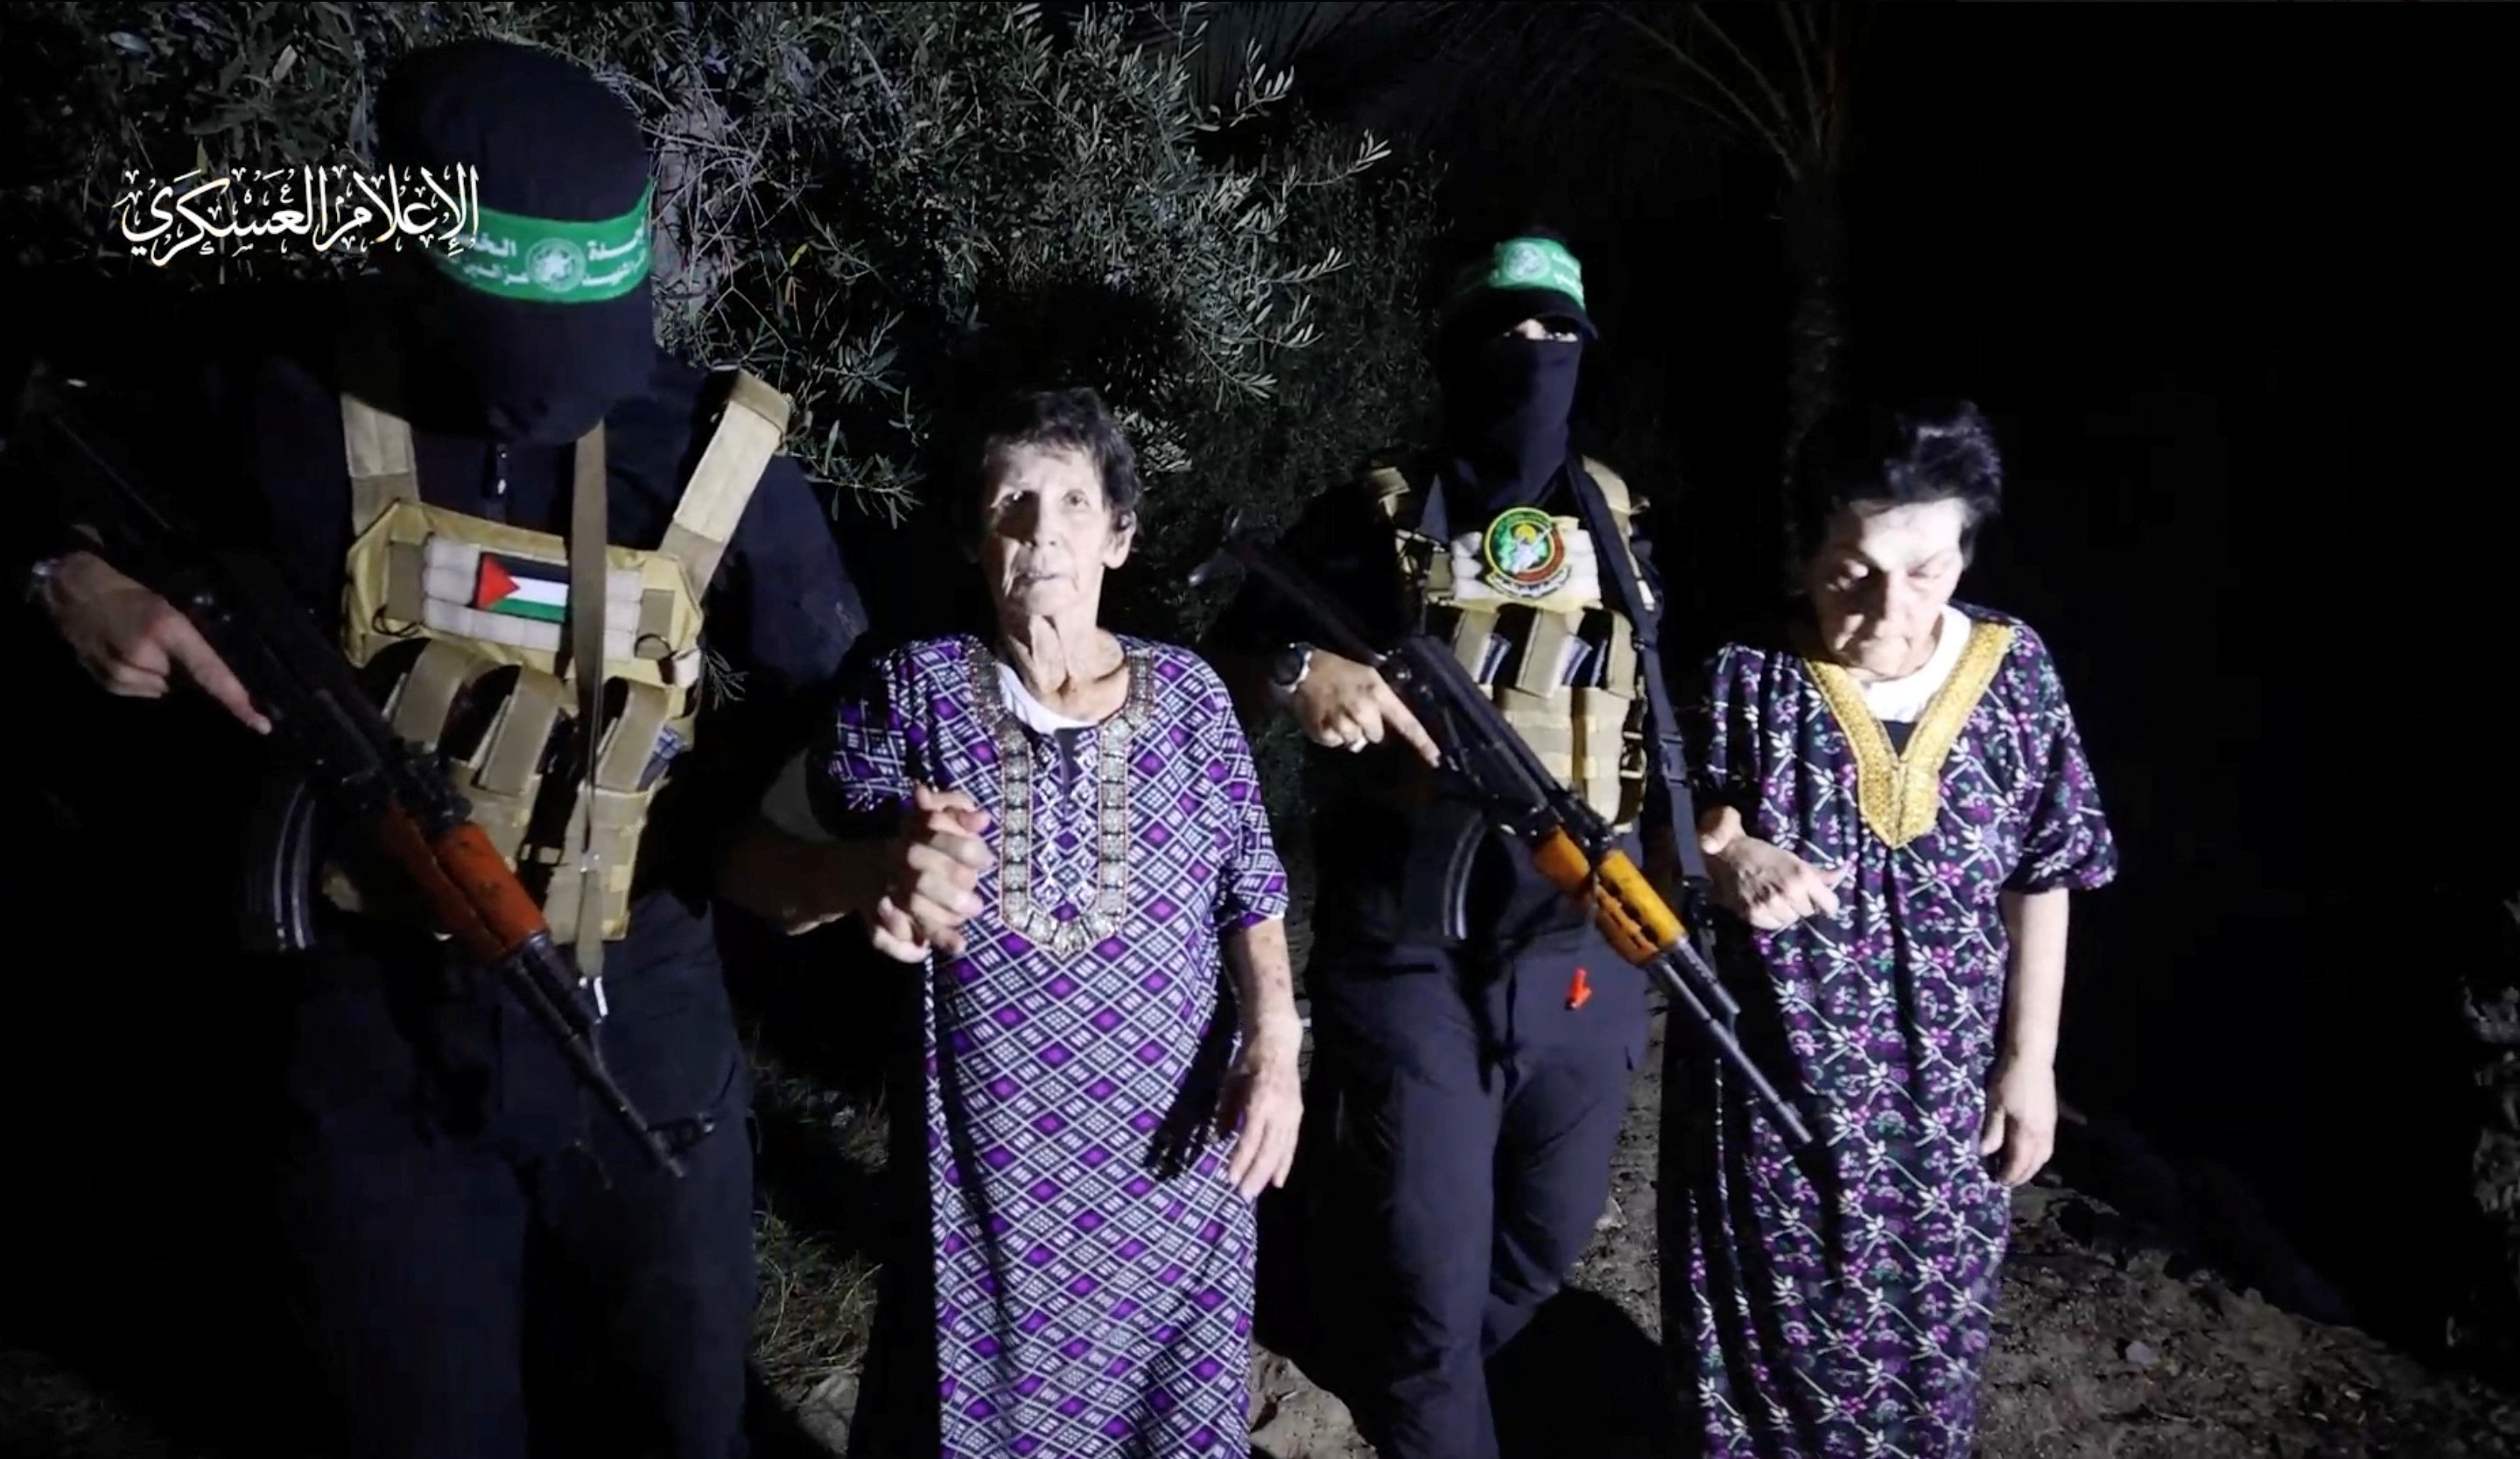  하마스의 두번째 인질 석방으로 고령의 이스라엘 여성 2명이 인계되고 있다. (사진출처: 로이터통신)